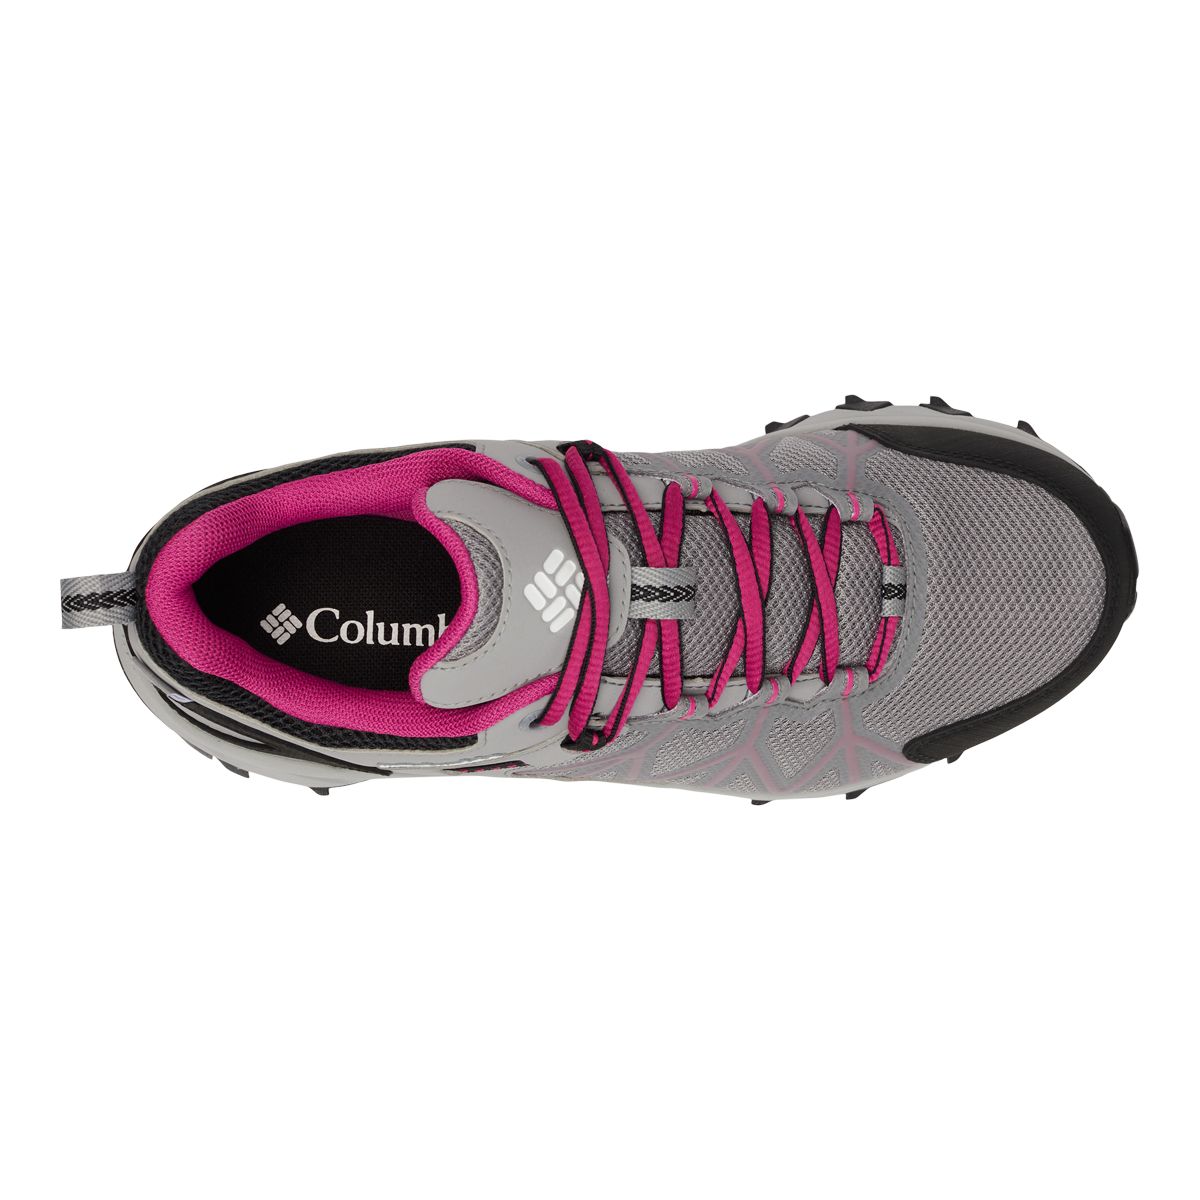 Columbia Women's Peakfreak II Outdry Low Hiking Shoes